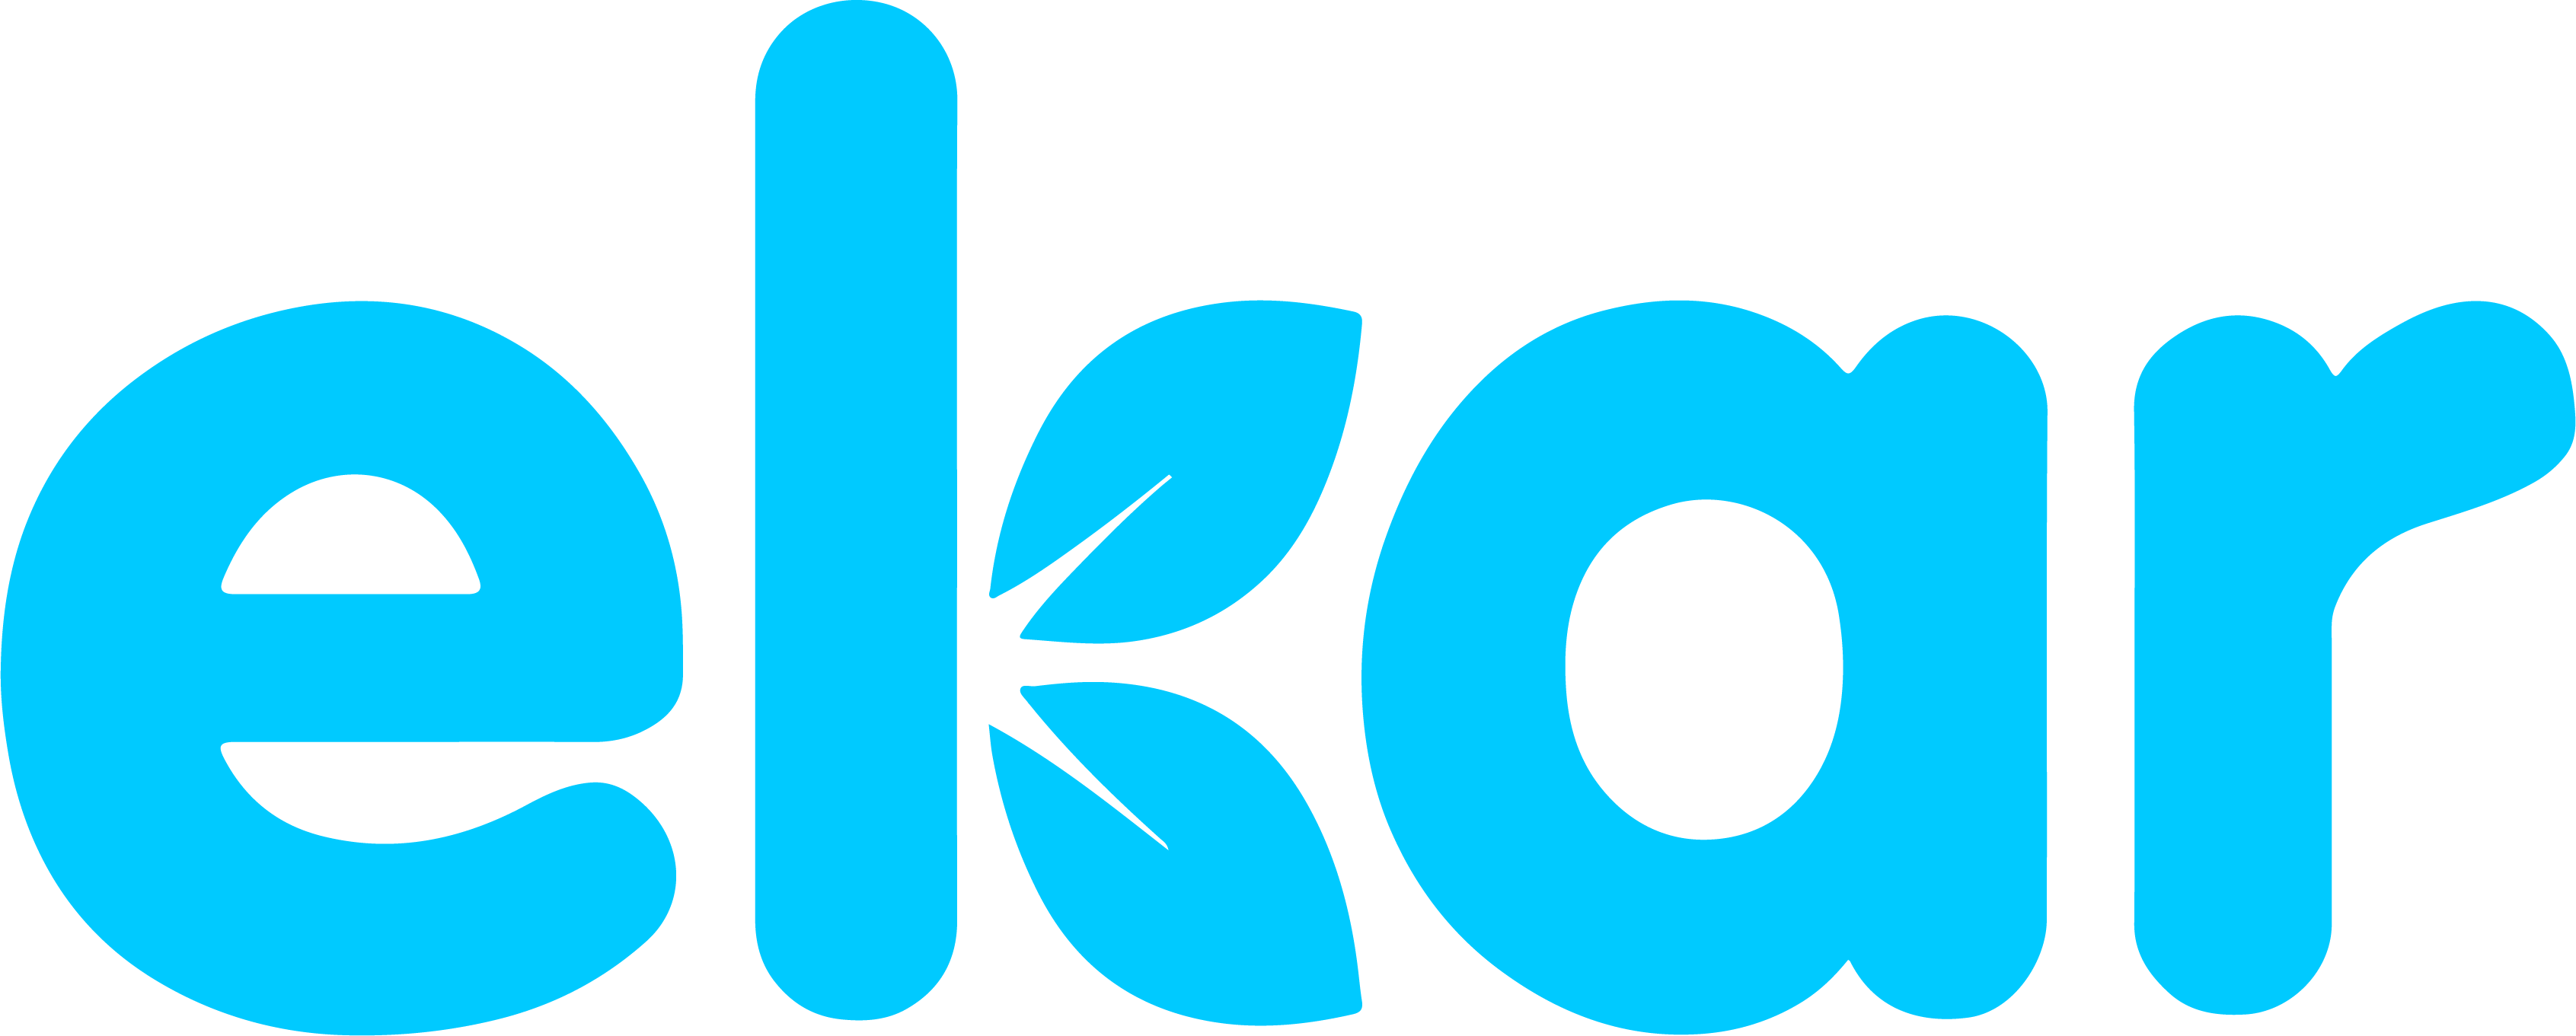 ekar logo blue (3)